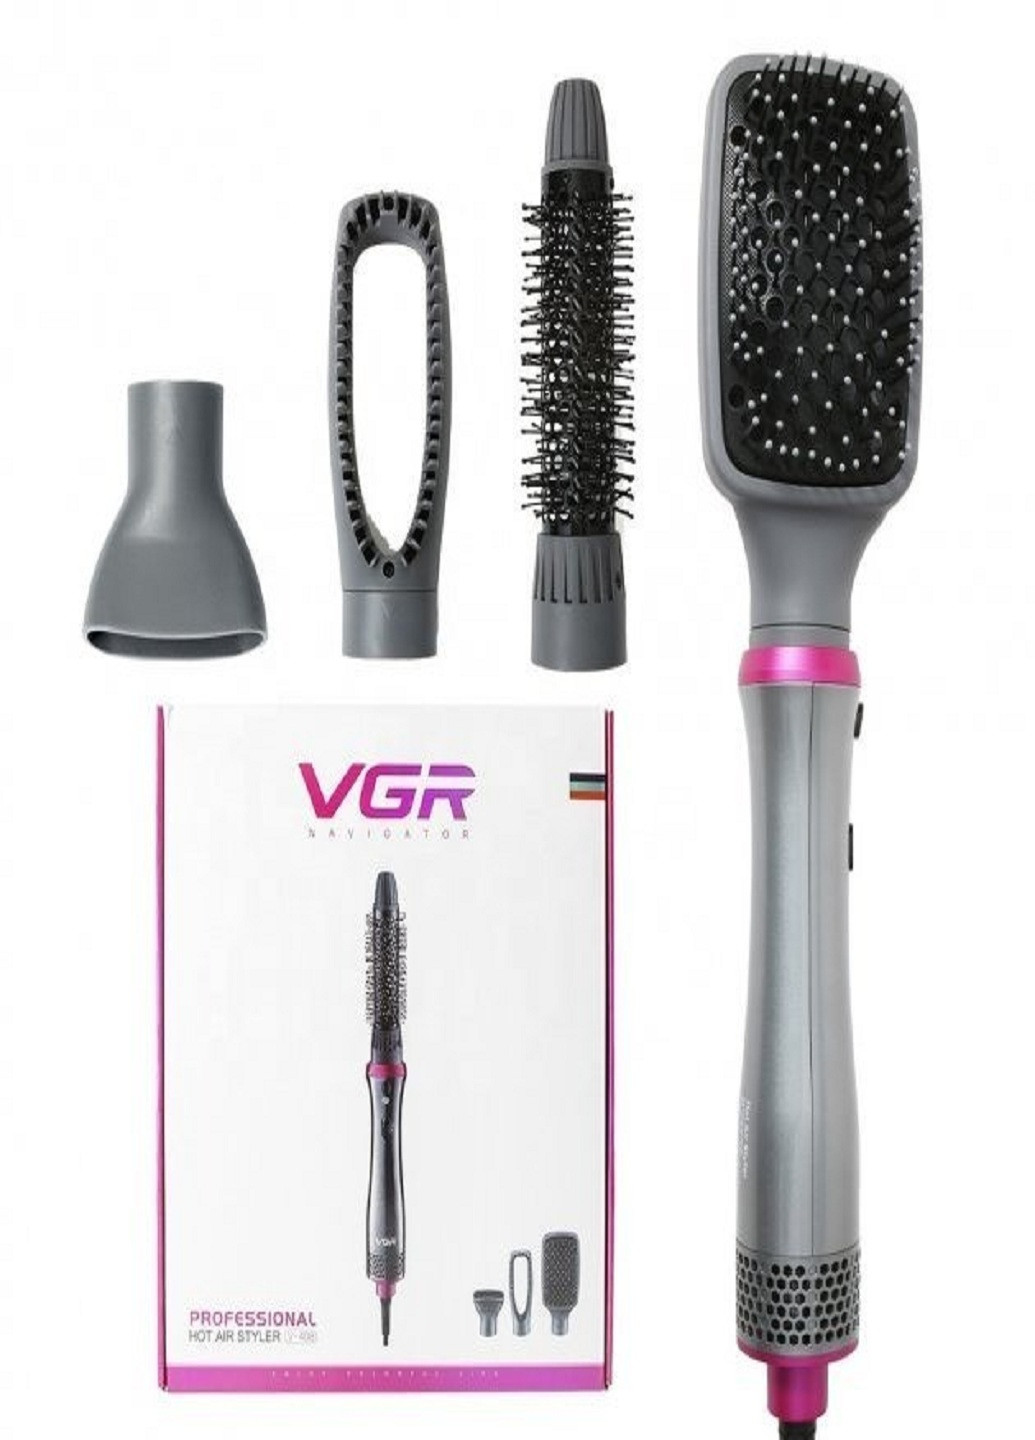 Профессиональный фен-щетка расческа стайлер для укладки волос многофункциональный 4в1 V-408 700Вт Серый VGR (254110713)